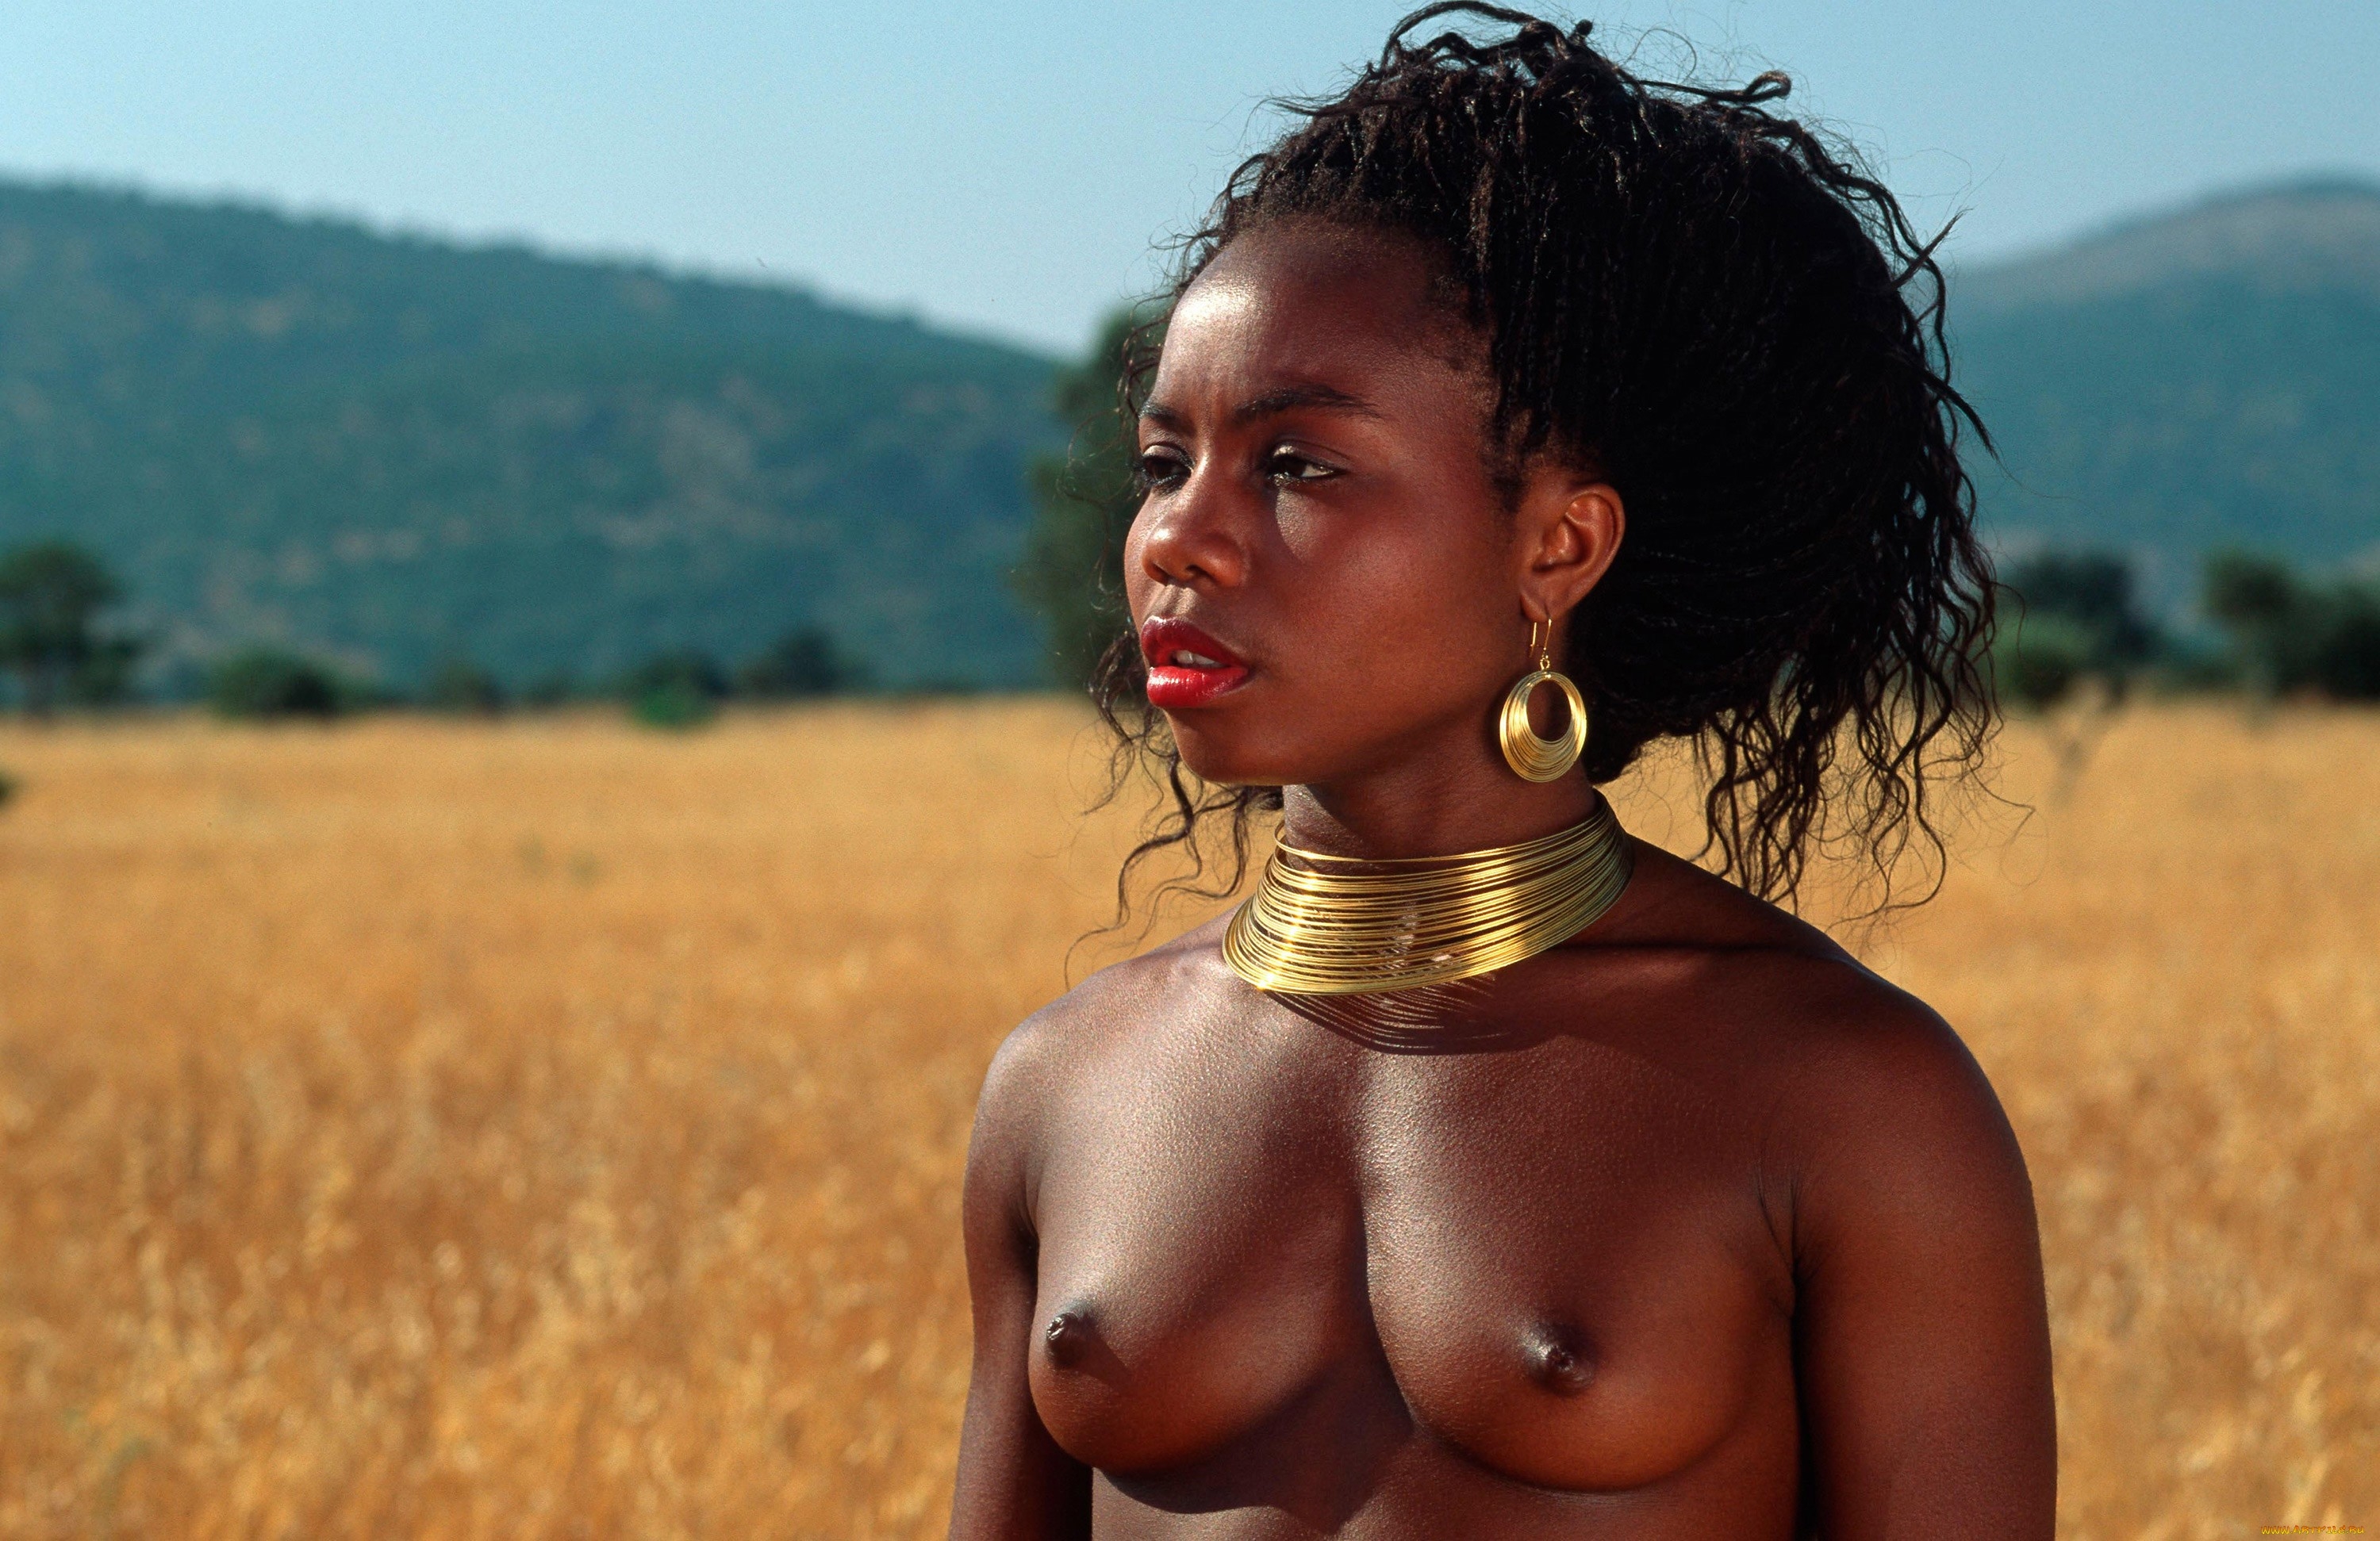 голые женщины диких племен фото